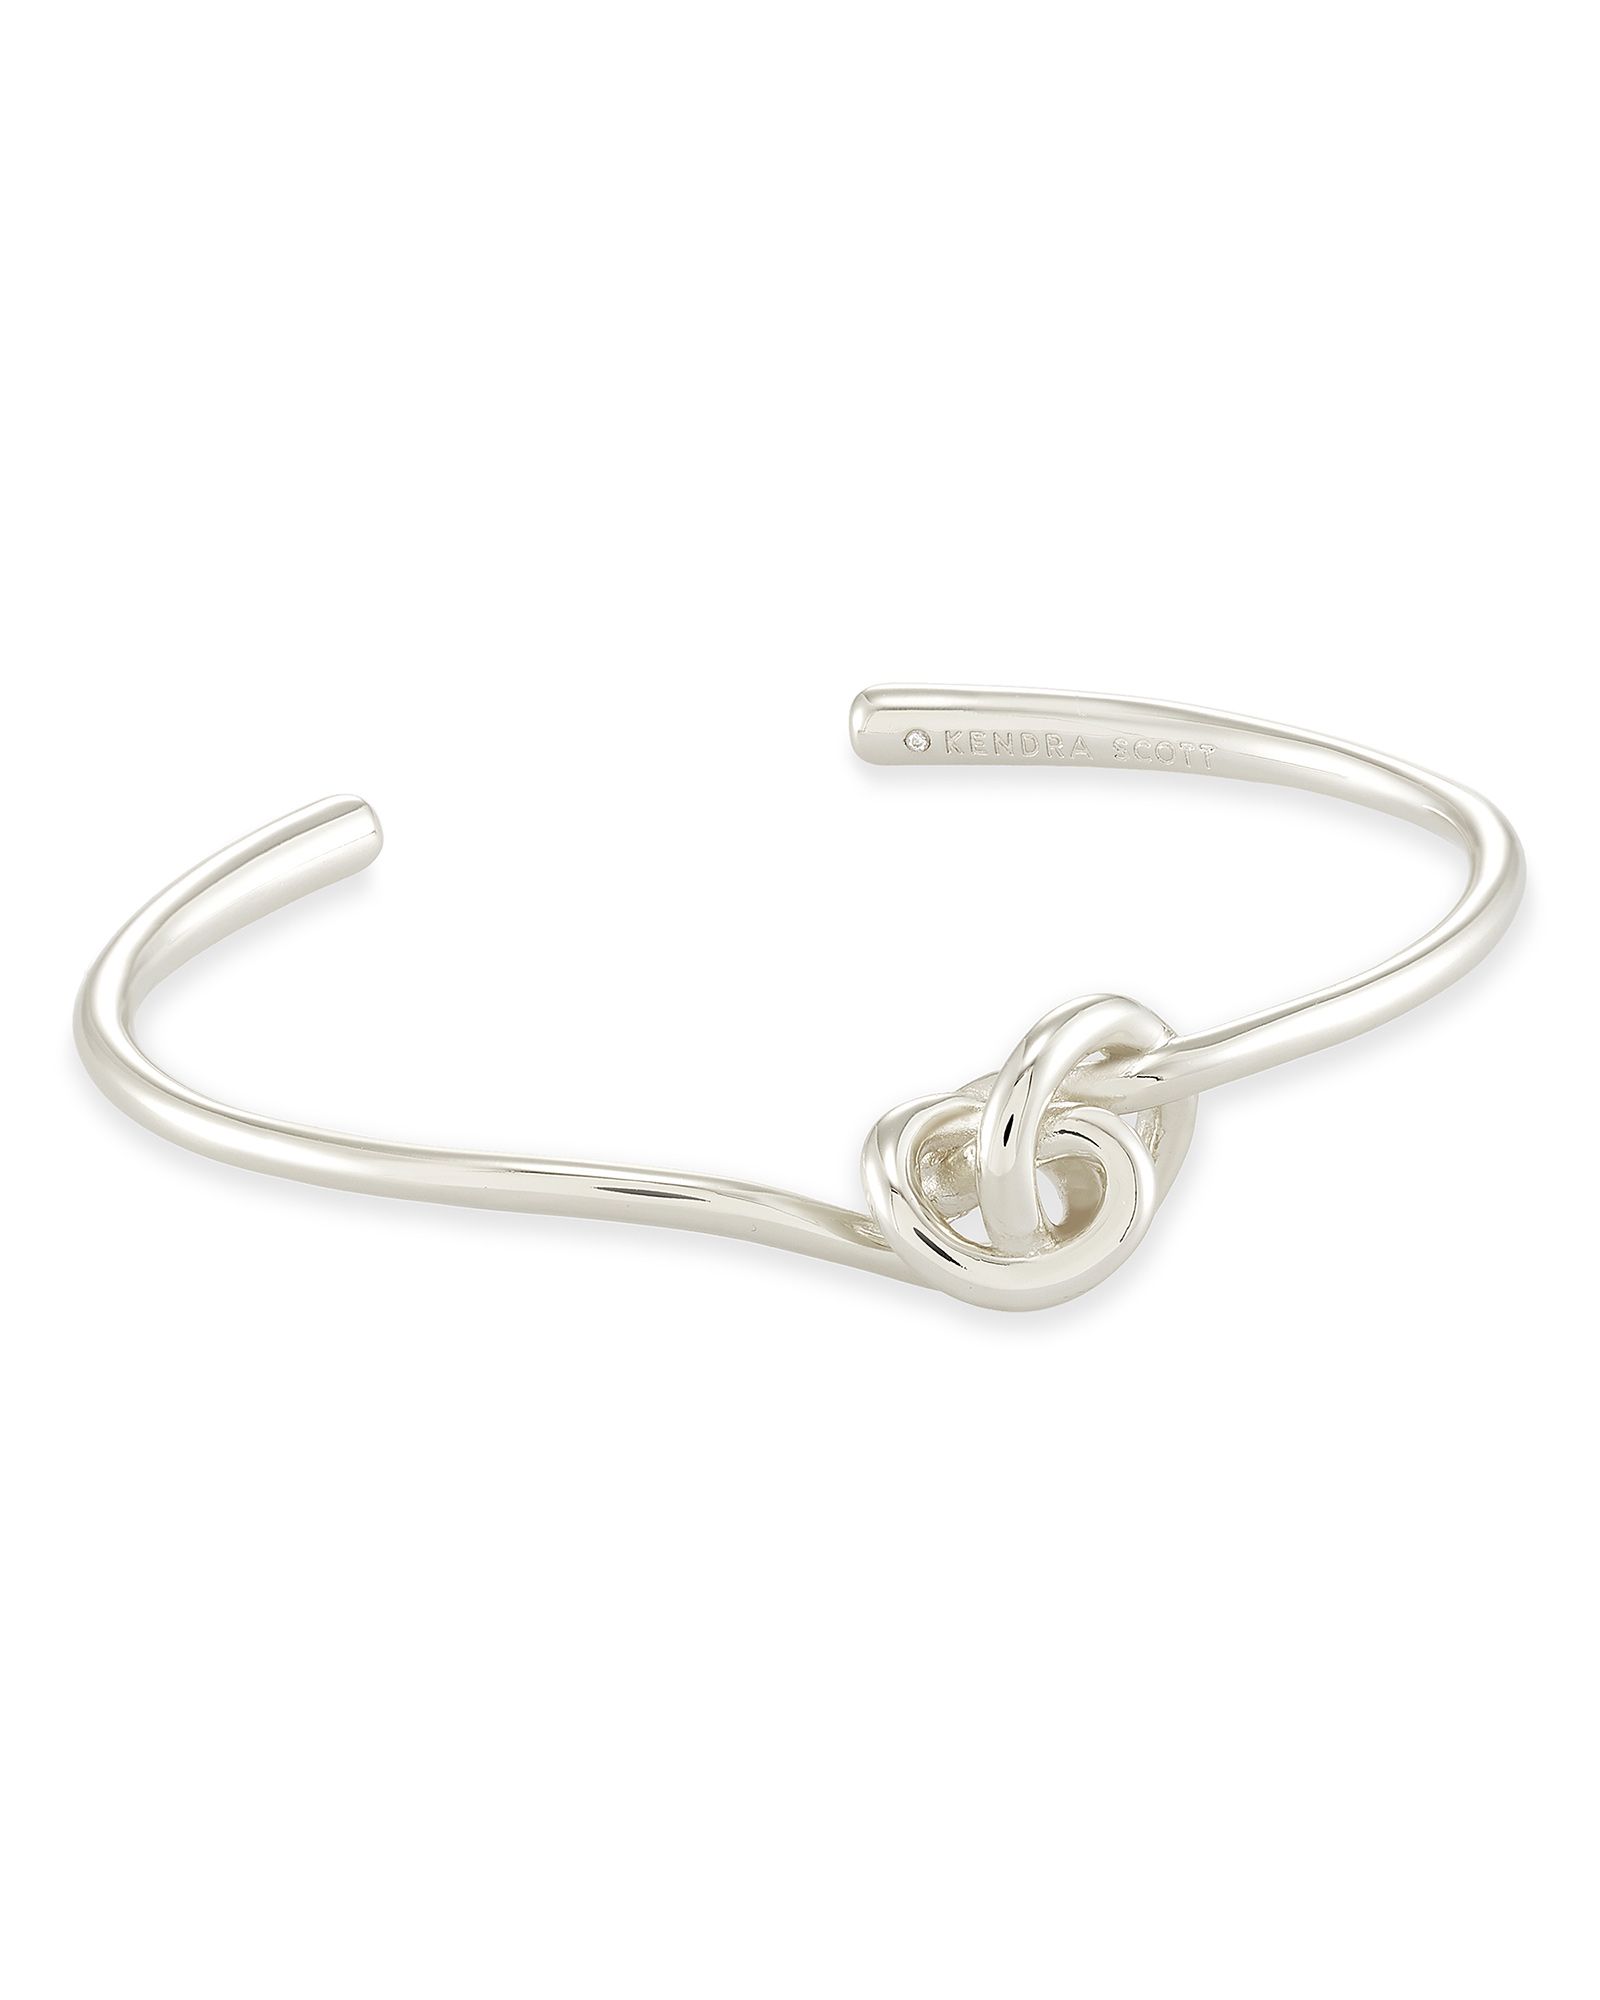 Presleigh Cuff Bracelet in Bright Silver | Kendra Scott